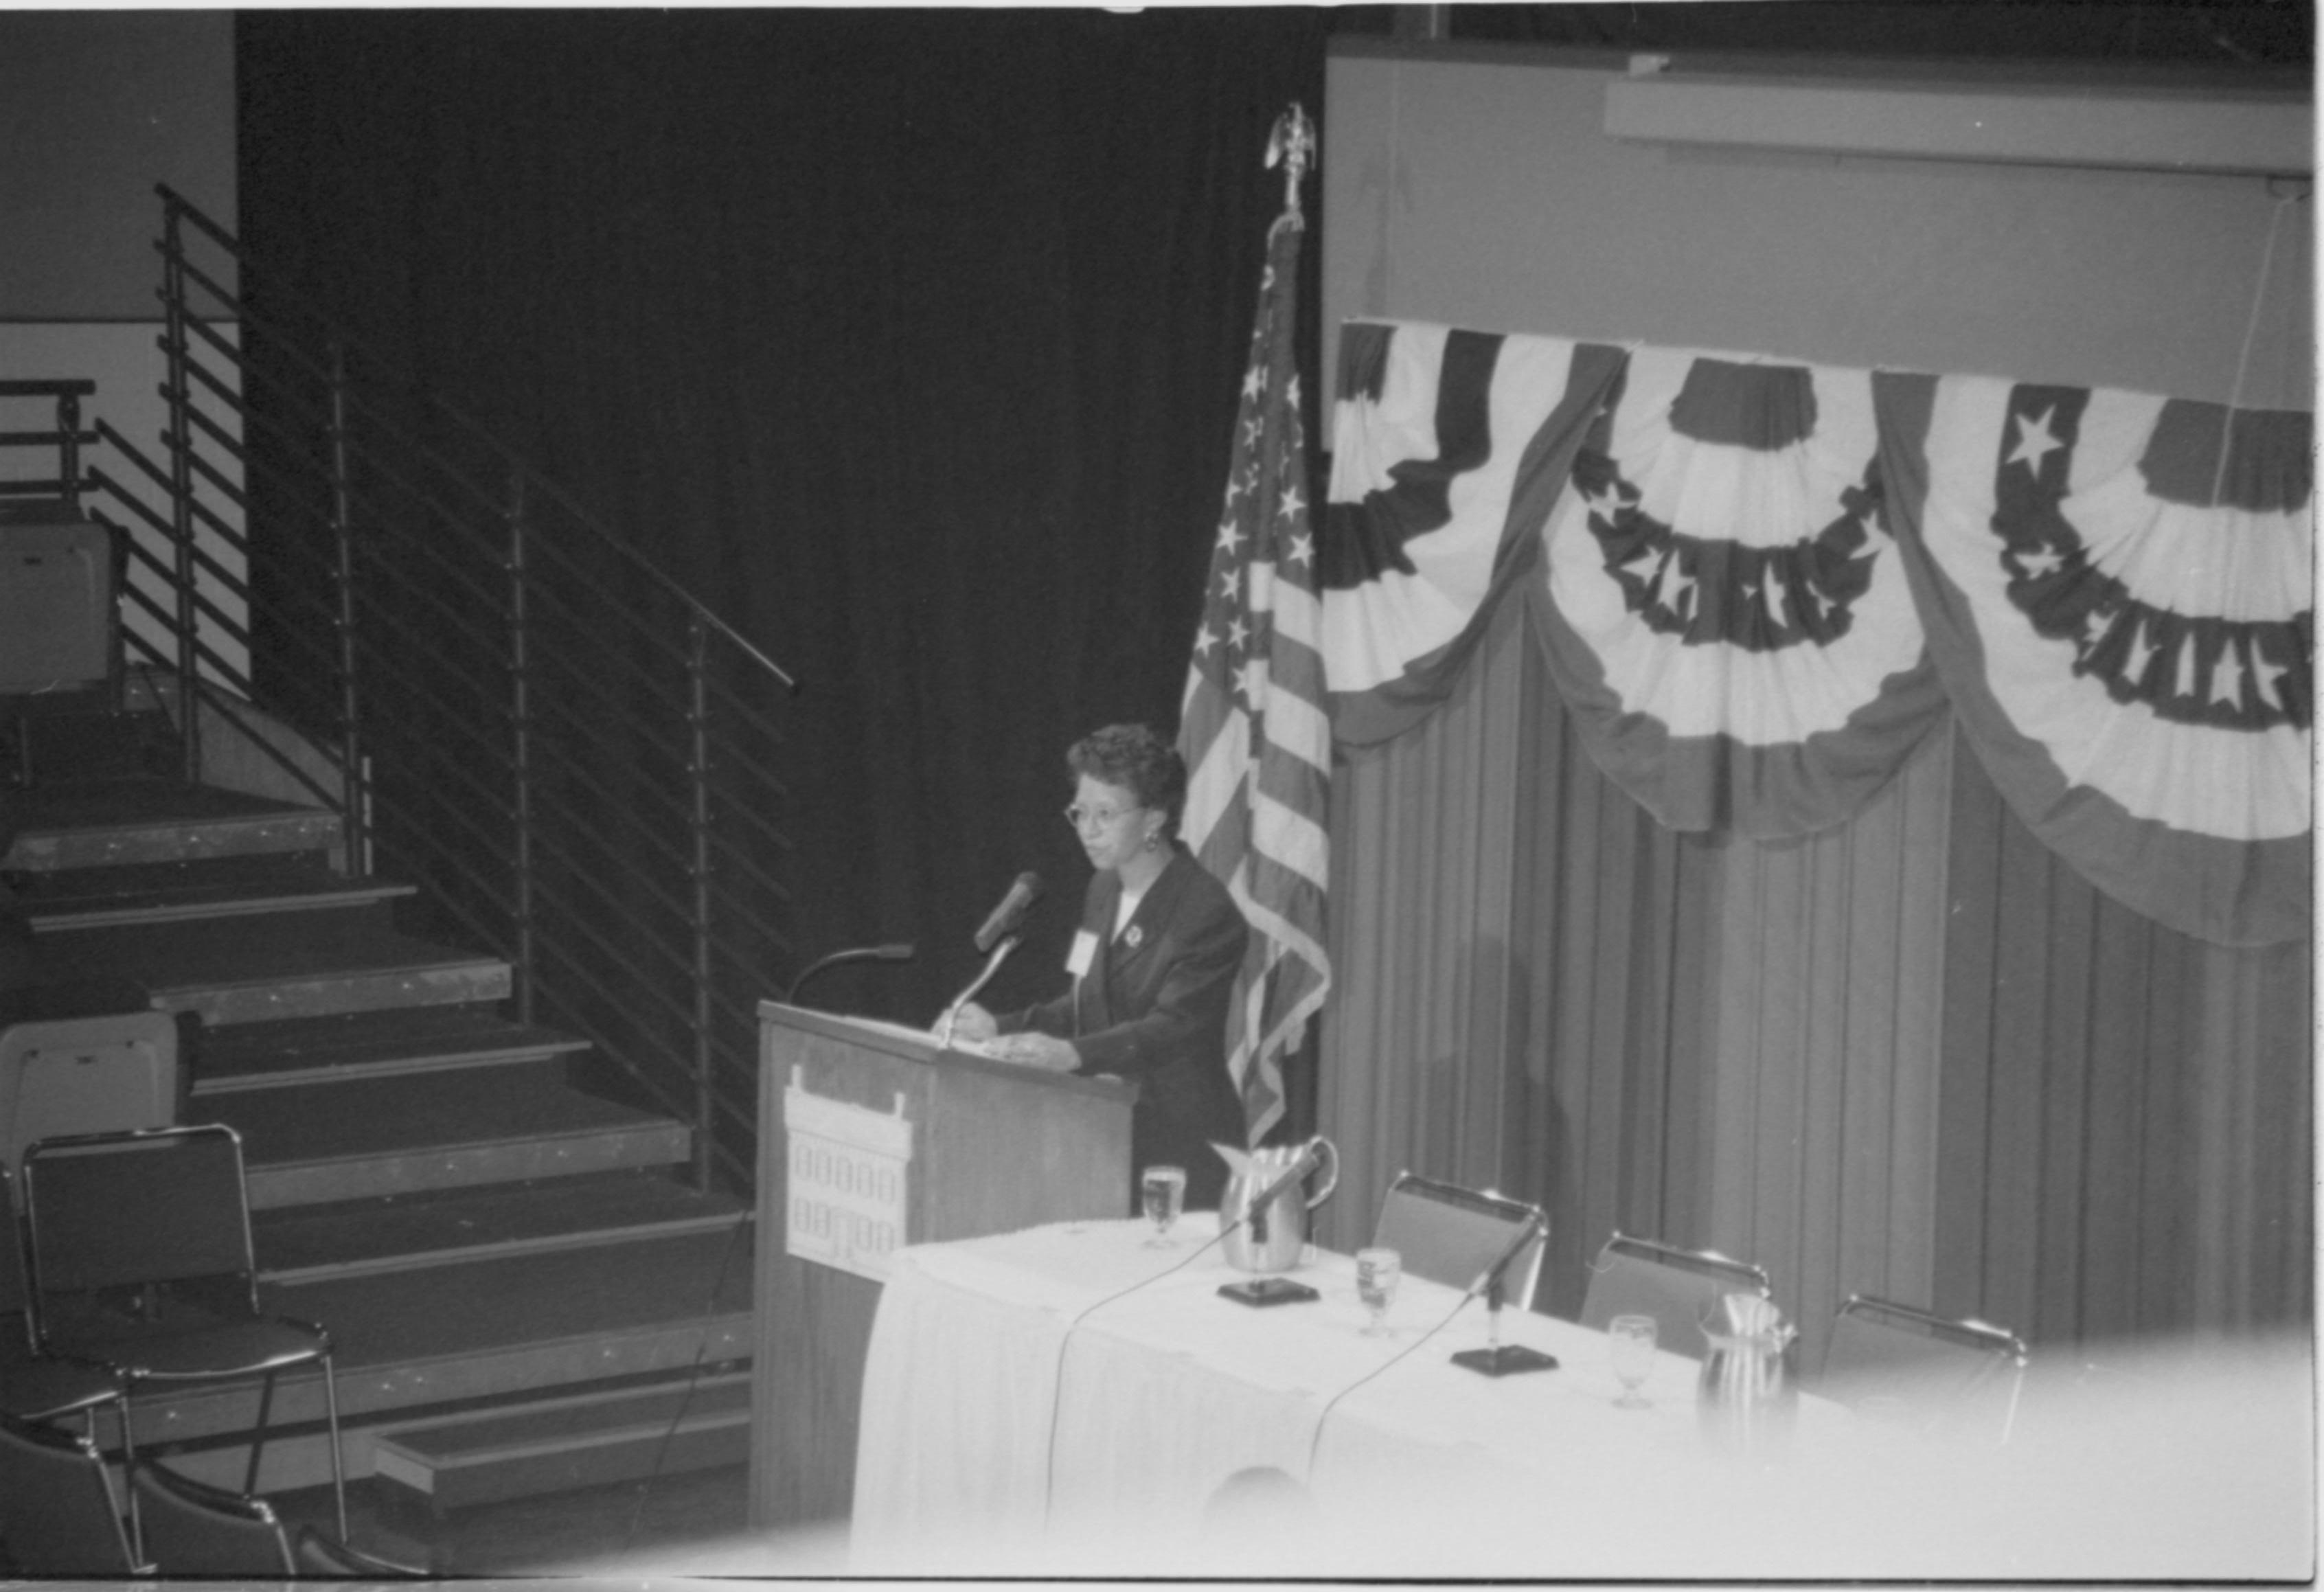 Lady speaking at podium. 1999-16; 35 Colloquium, 1999